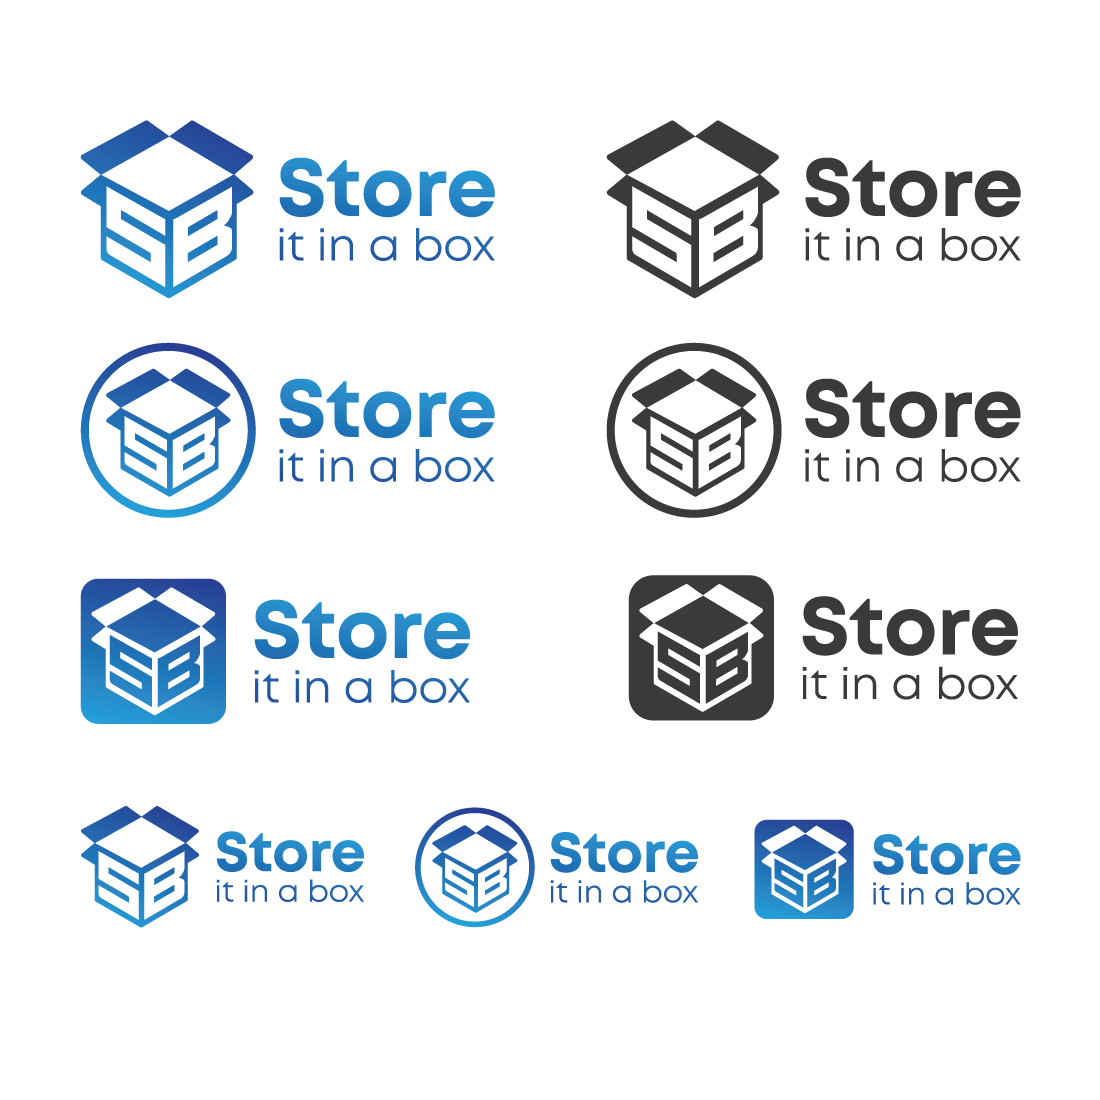 SB Store box logo preview image.